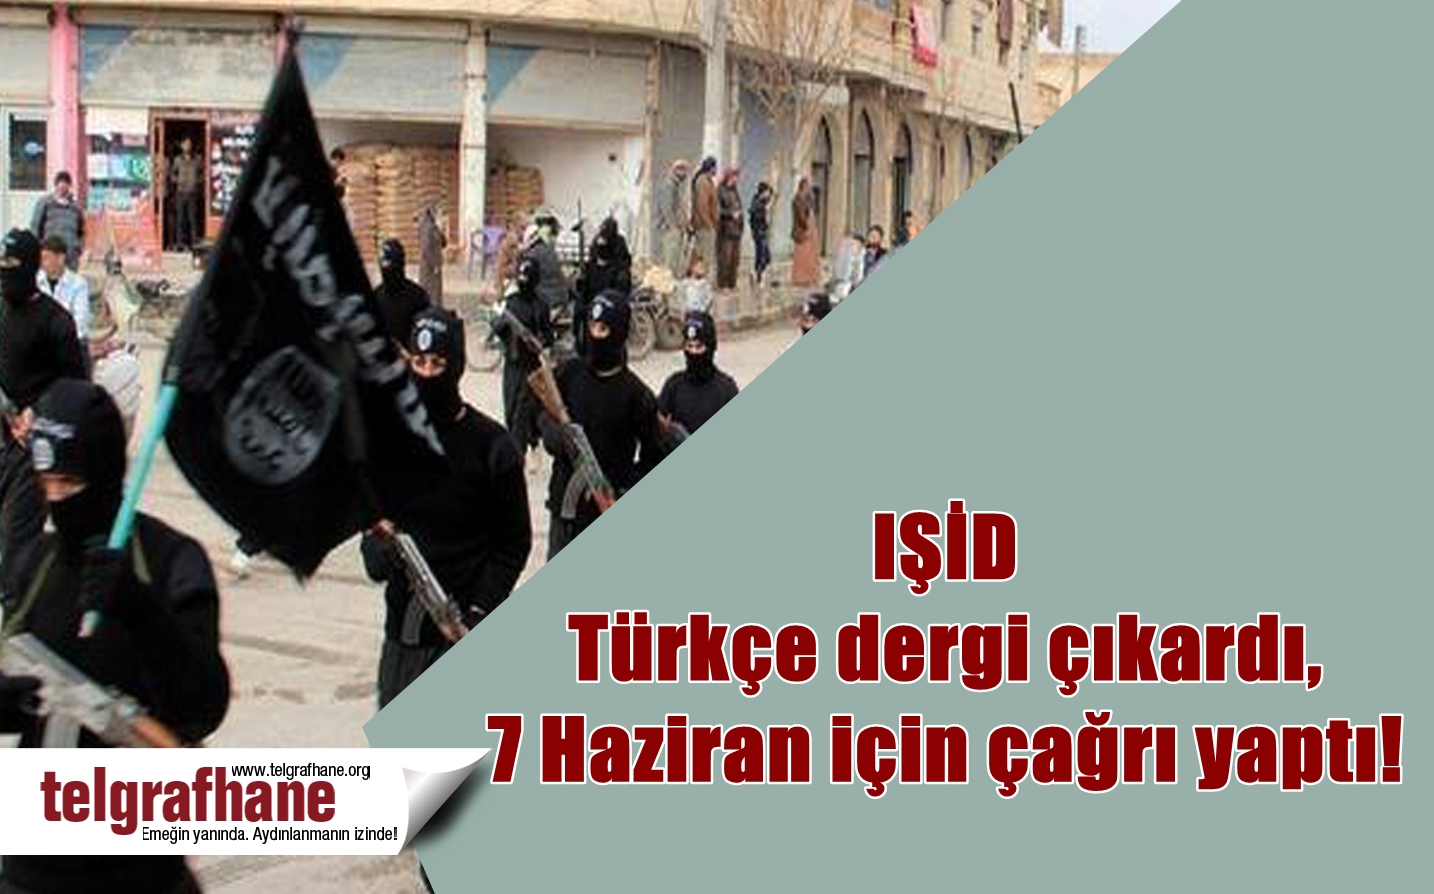 IŞİD Türkçe dergi çıkardı, 7 Haziran için çağrı yaptı!